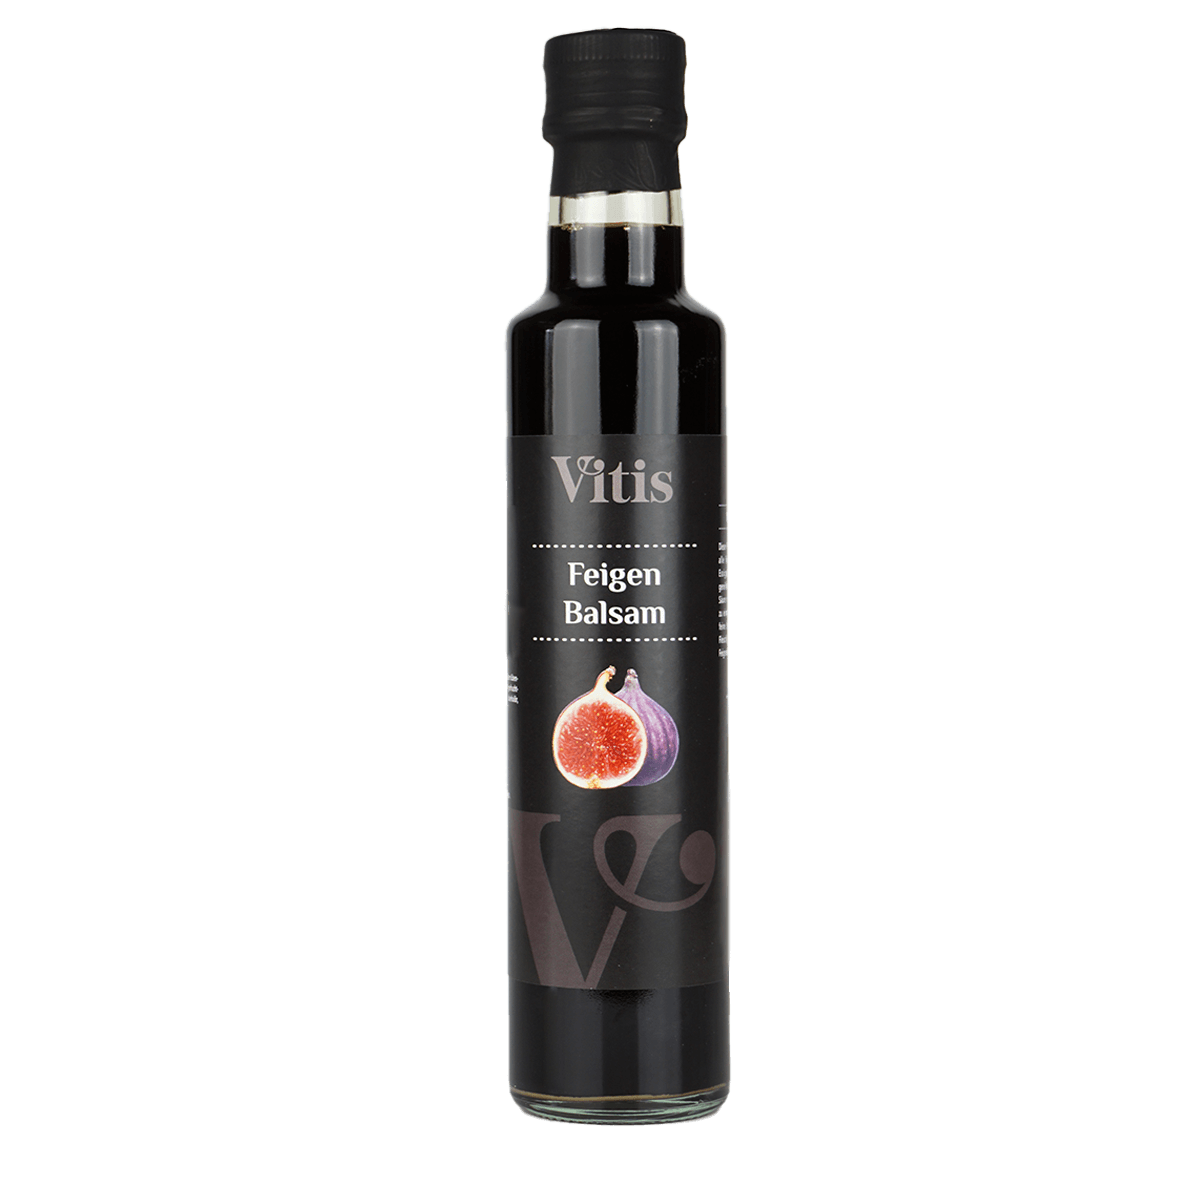 Eine Flasche Feigen Balsam Essig von Vitis24.